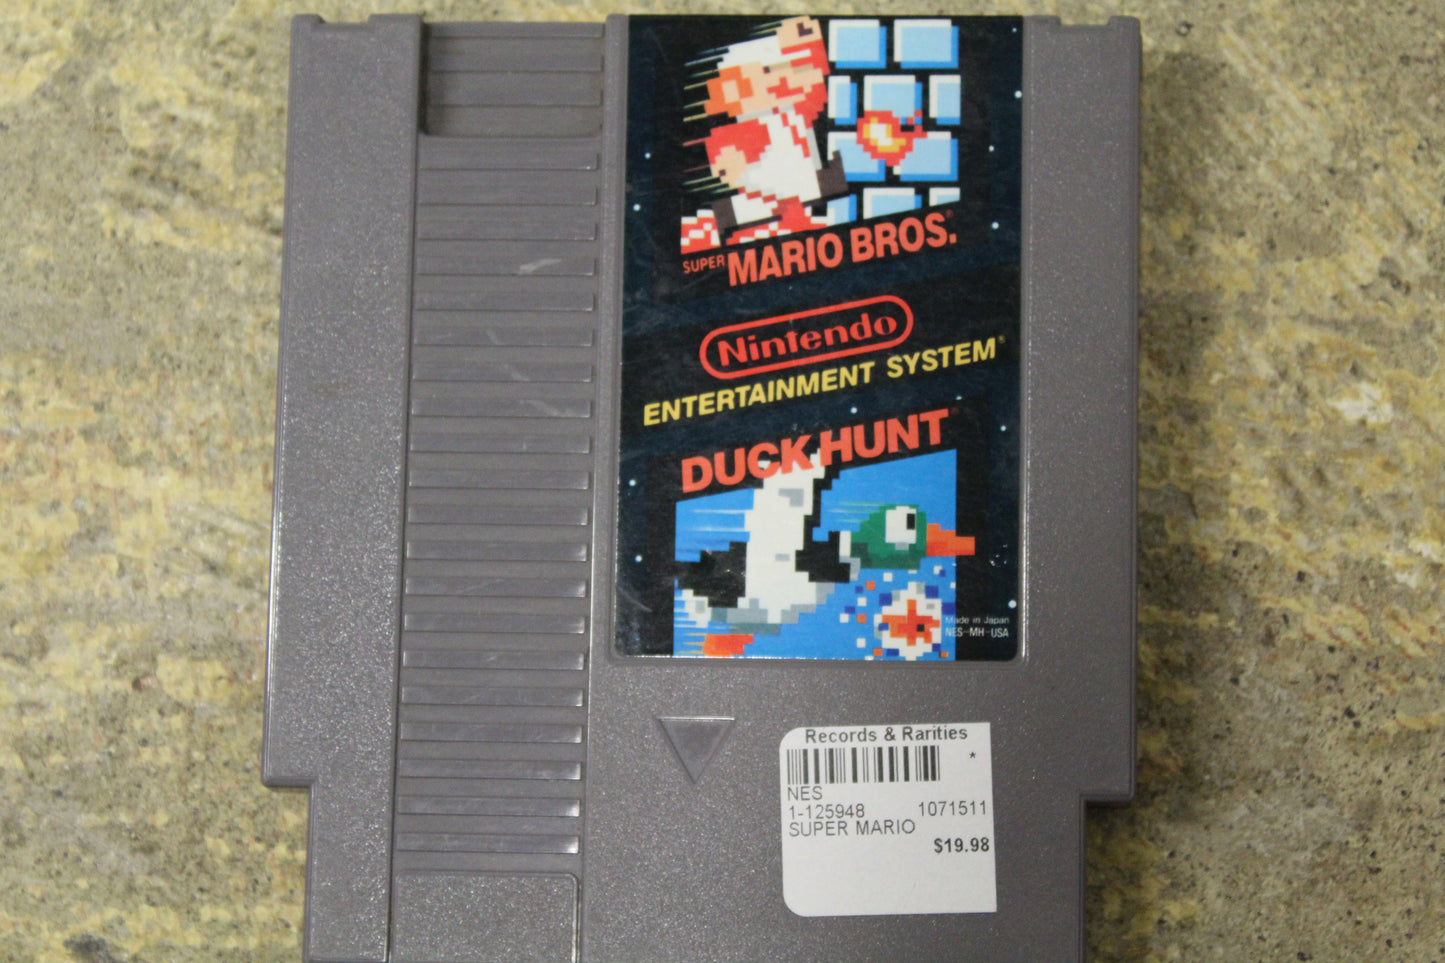 Super Mario Bros./Duck Hunt (Loose) - NES